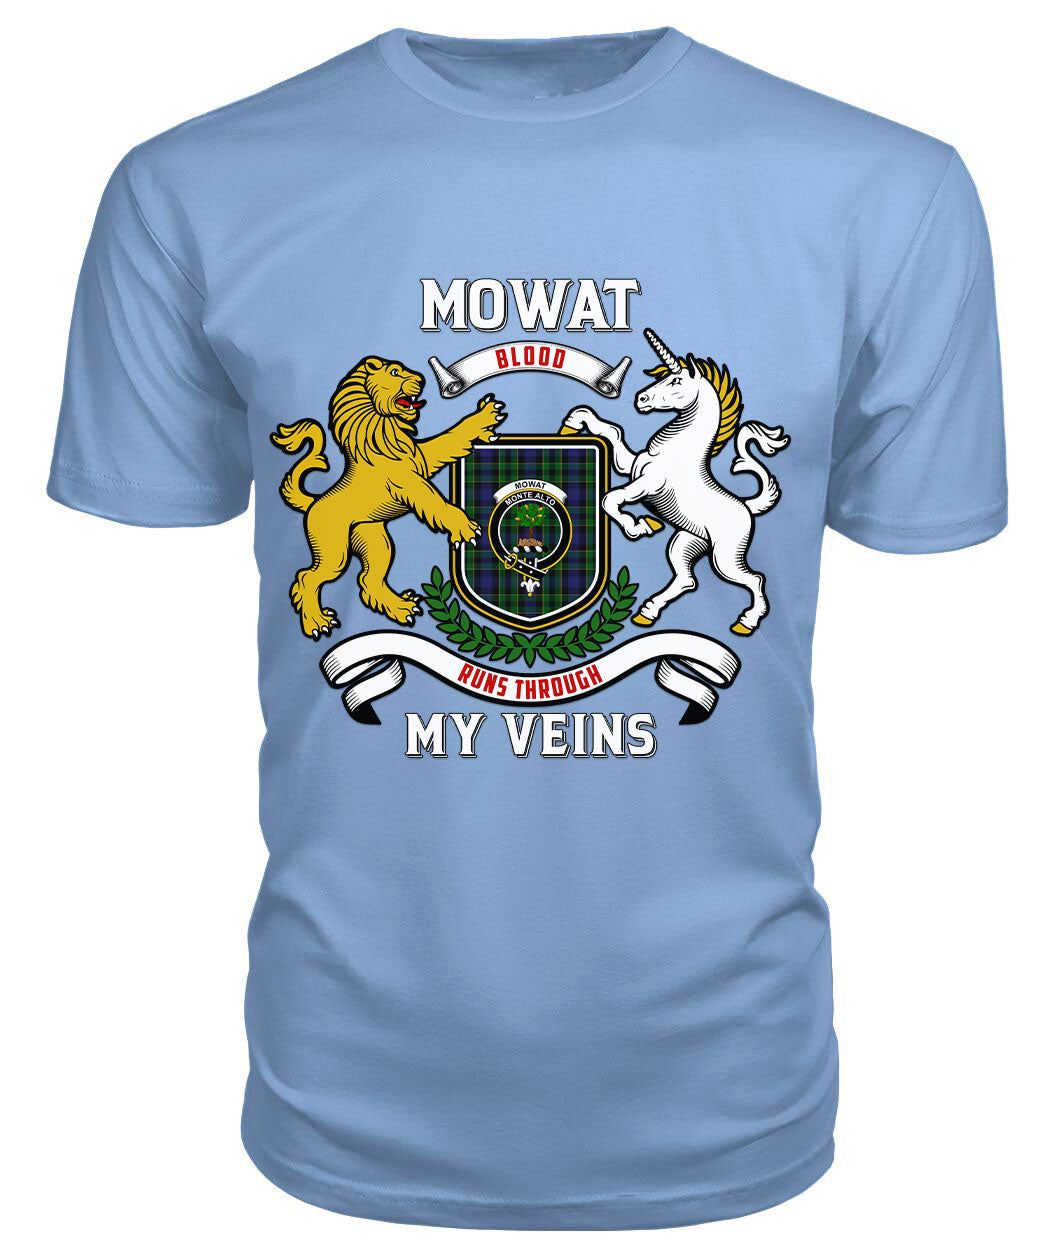 Mowat Modern Tartan Crest 2D T-shirt - Blood Runs Through My Veins Style